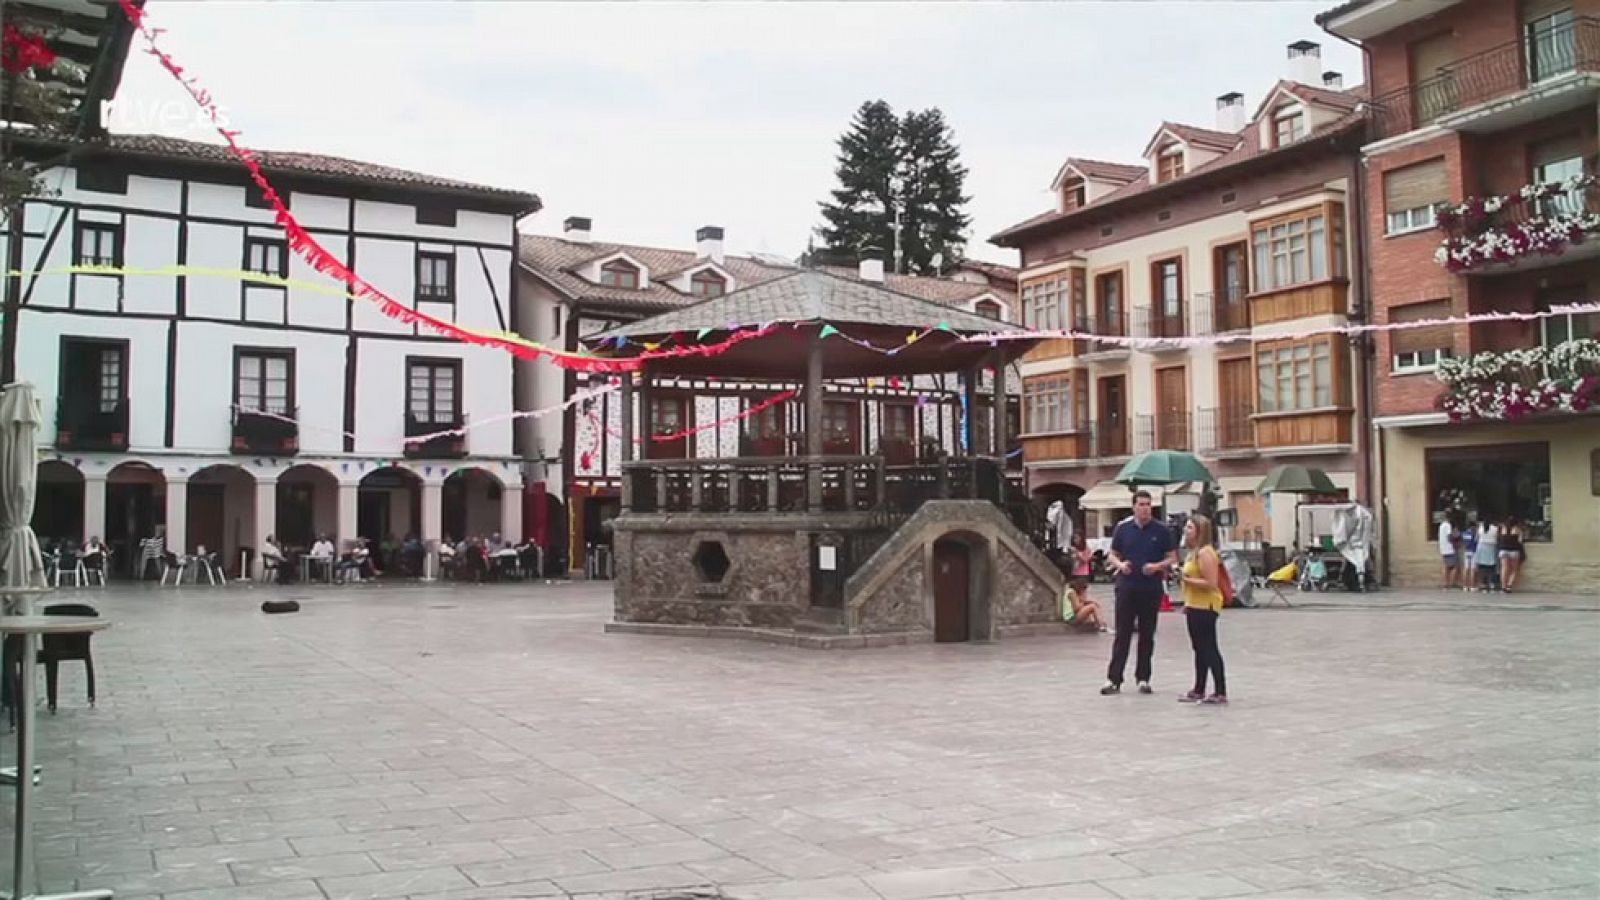 Olmos y Robles - Ezcaray: Plaza de Torremuzquiz